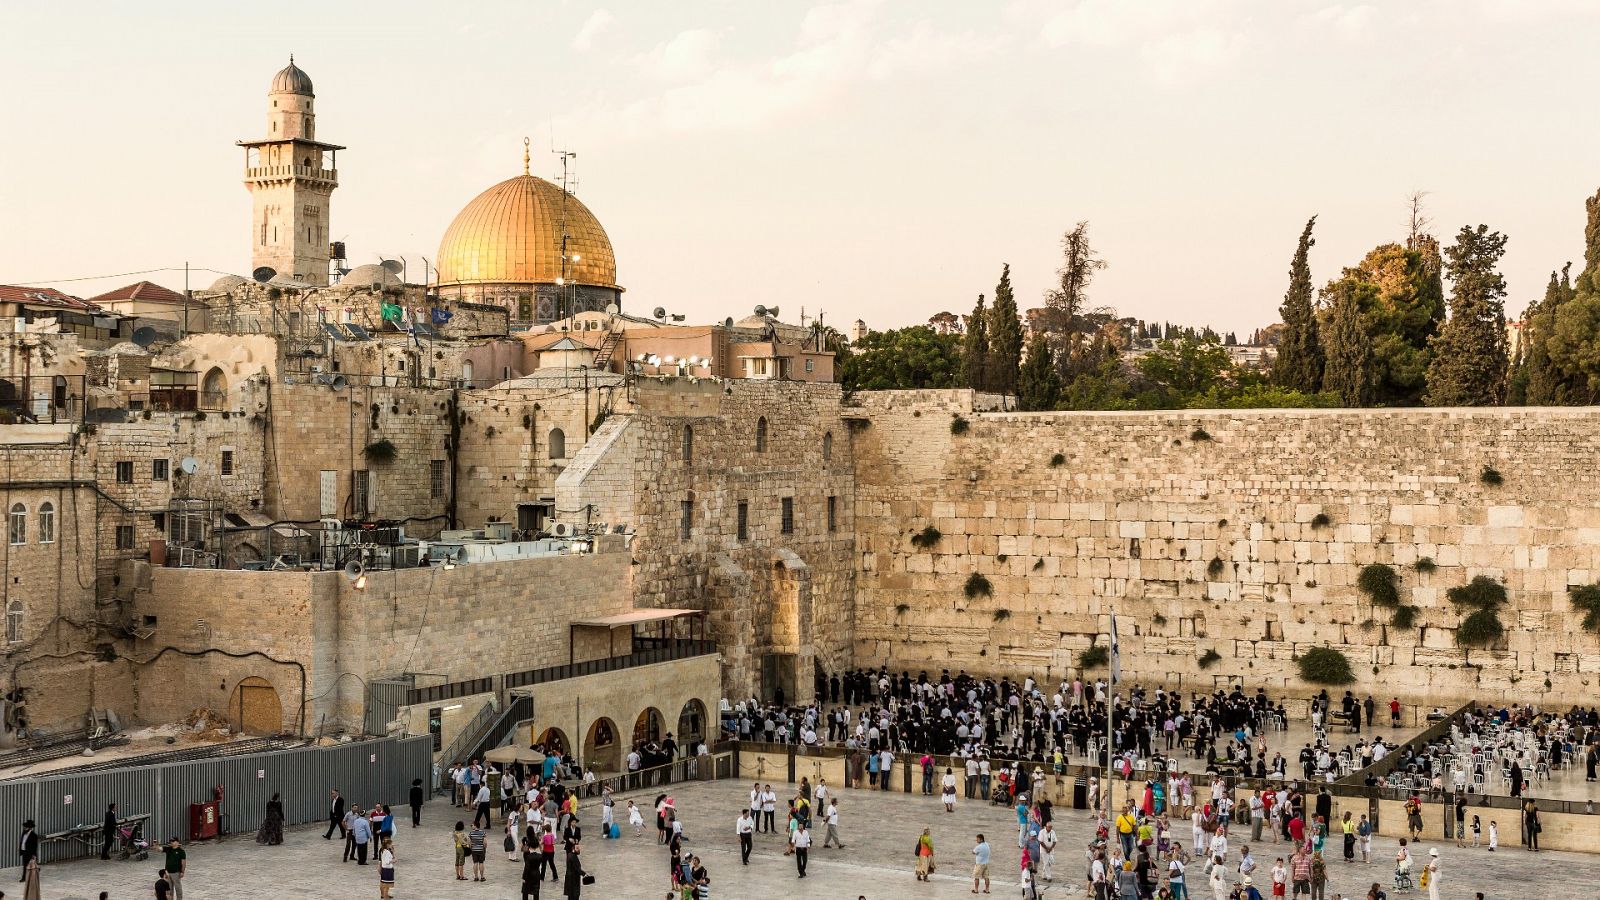 Viajes con destino a Israel, cancelados: las agencias anulan reservas por el conflicto